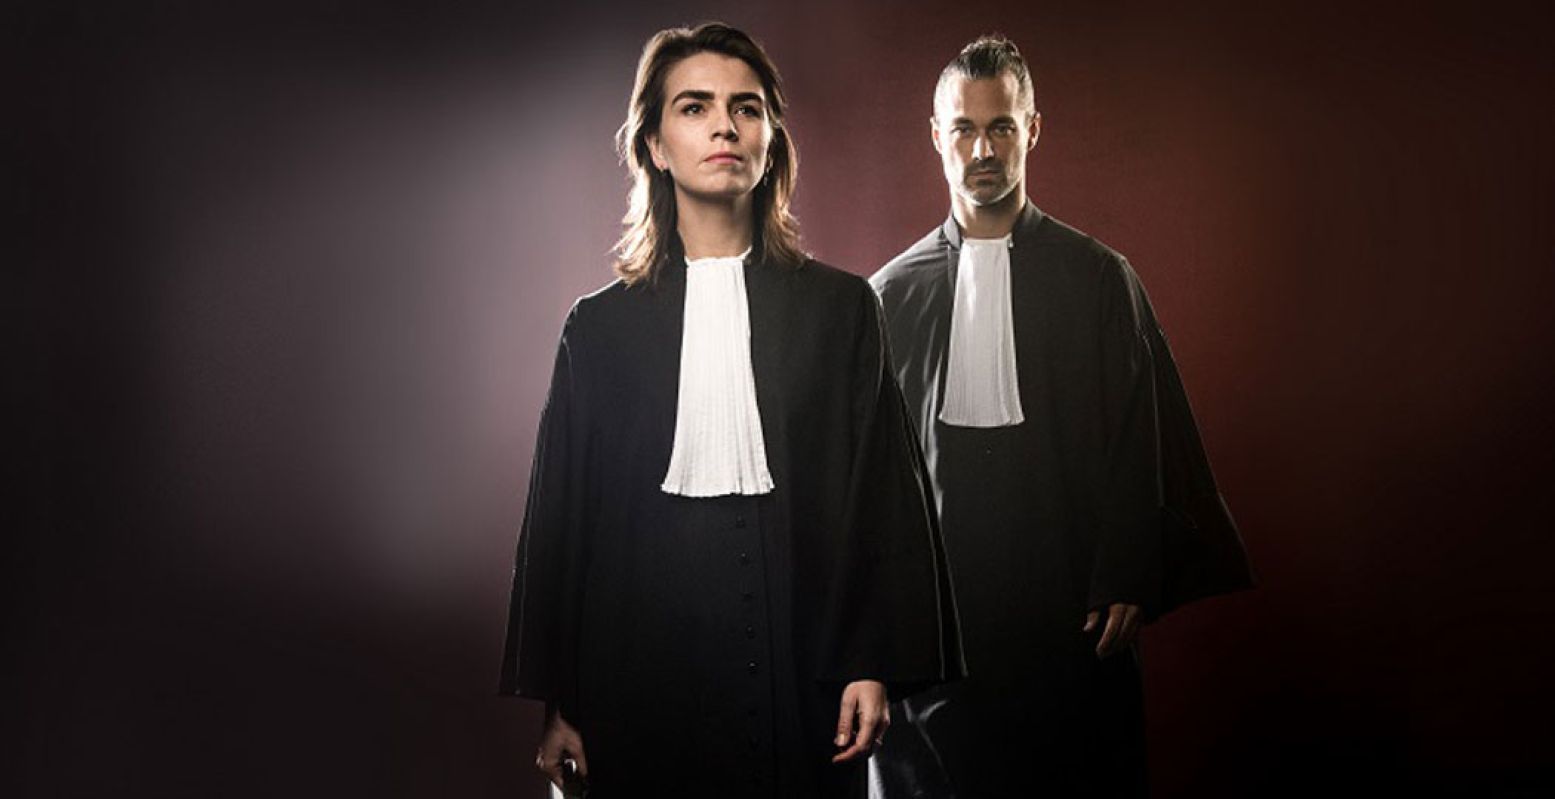 De hoofdrollen zijn onder andere voor Louise Korthals (officier van justitie) en Jan Kooiman (advocaat). Foto: © Annemieke van der Togt